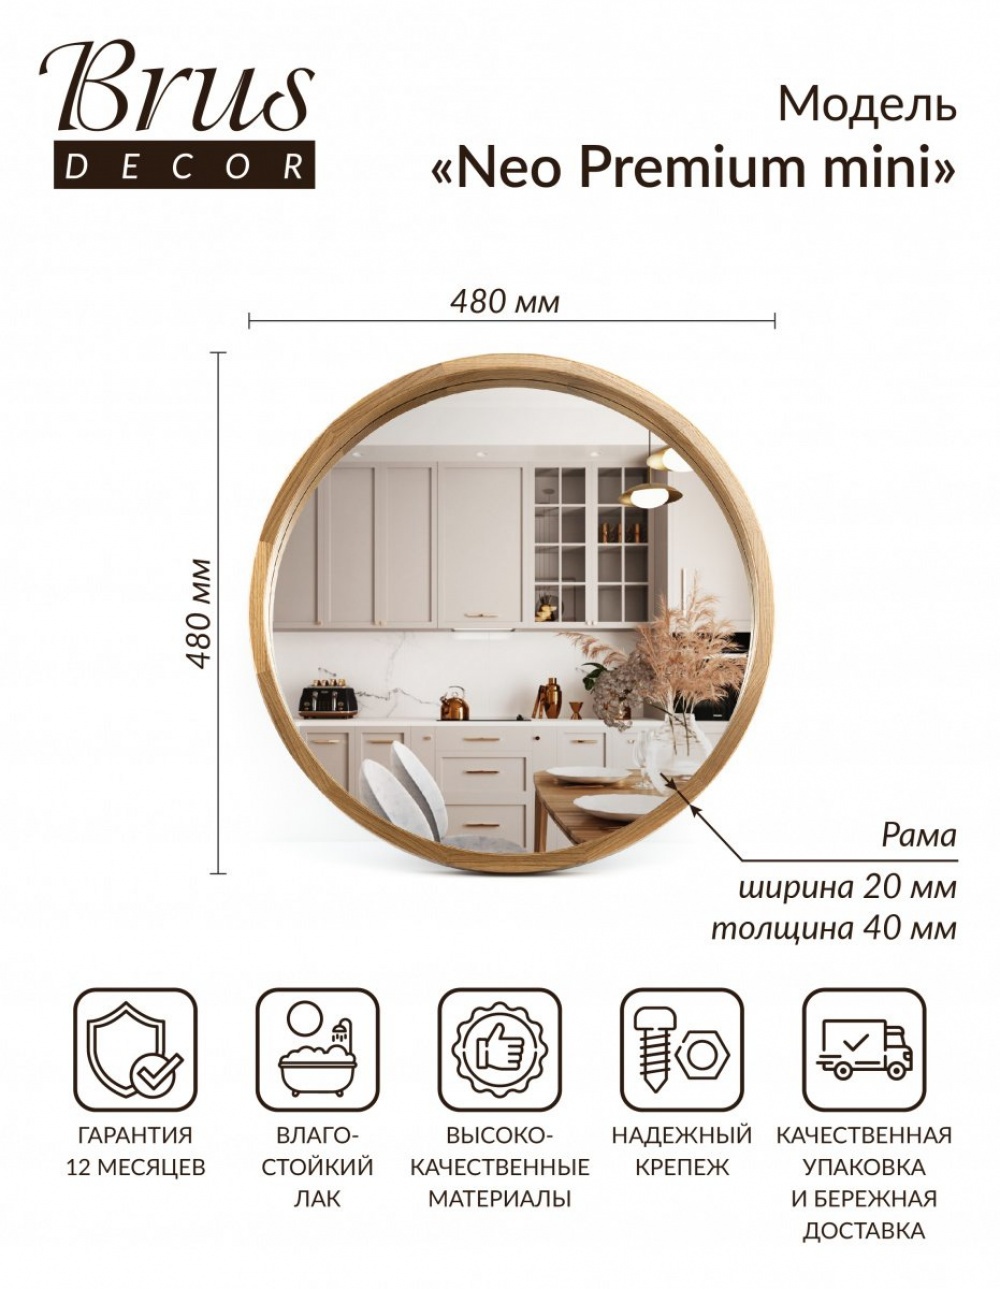 Зеркало интерьерное в ванную, прихожую, гостиную NEO Premium mini 480мм